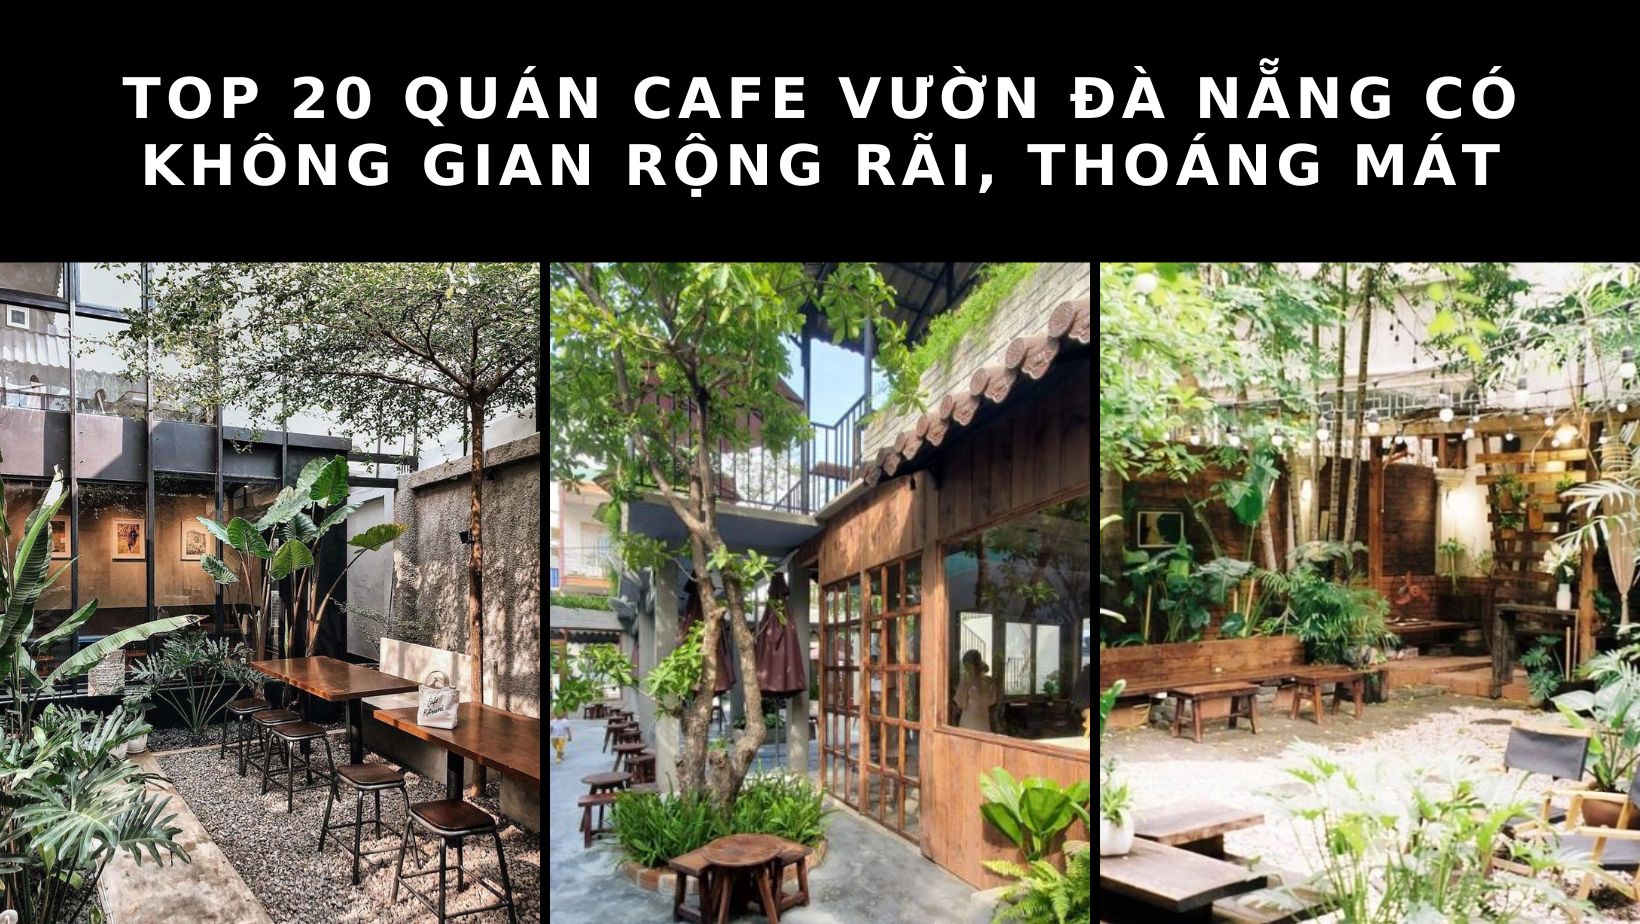 Khám phá sôi động đêm độc đáo với top 20 quán bar Đà Nẵng nổi tiếng